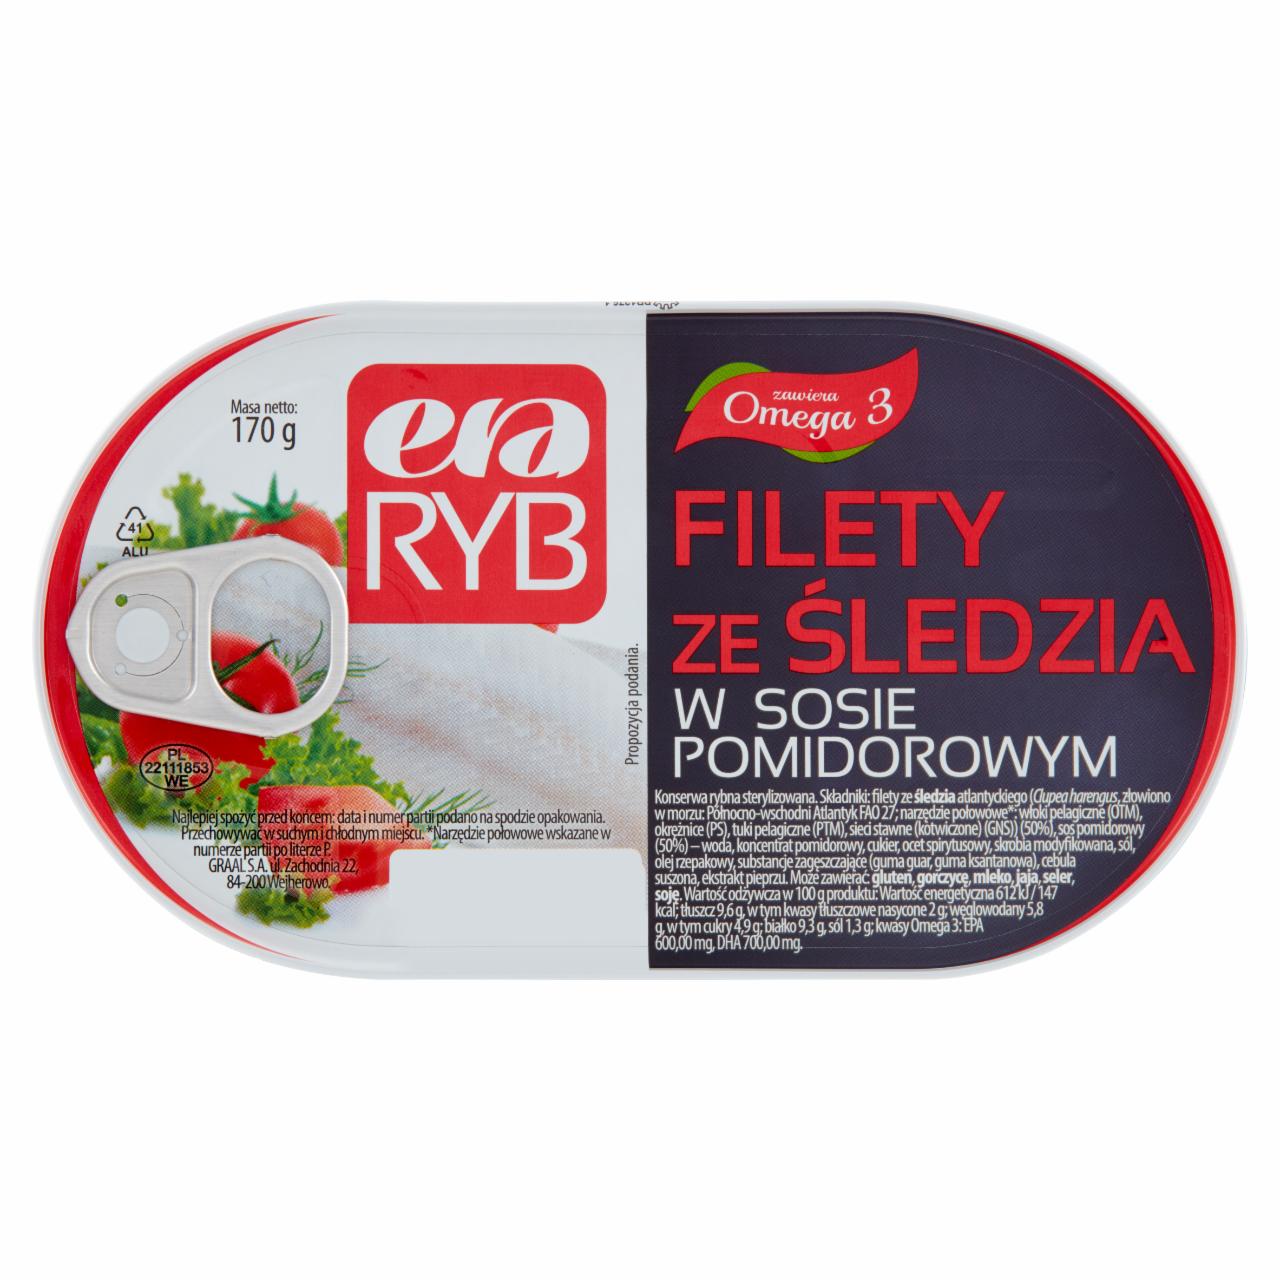 Zdjęcia - Era Ryb Filety ze śledzia w sosie pomidorowym 170 g